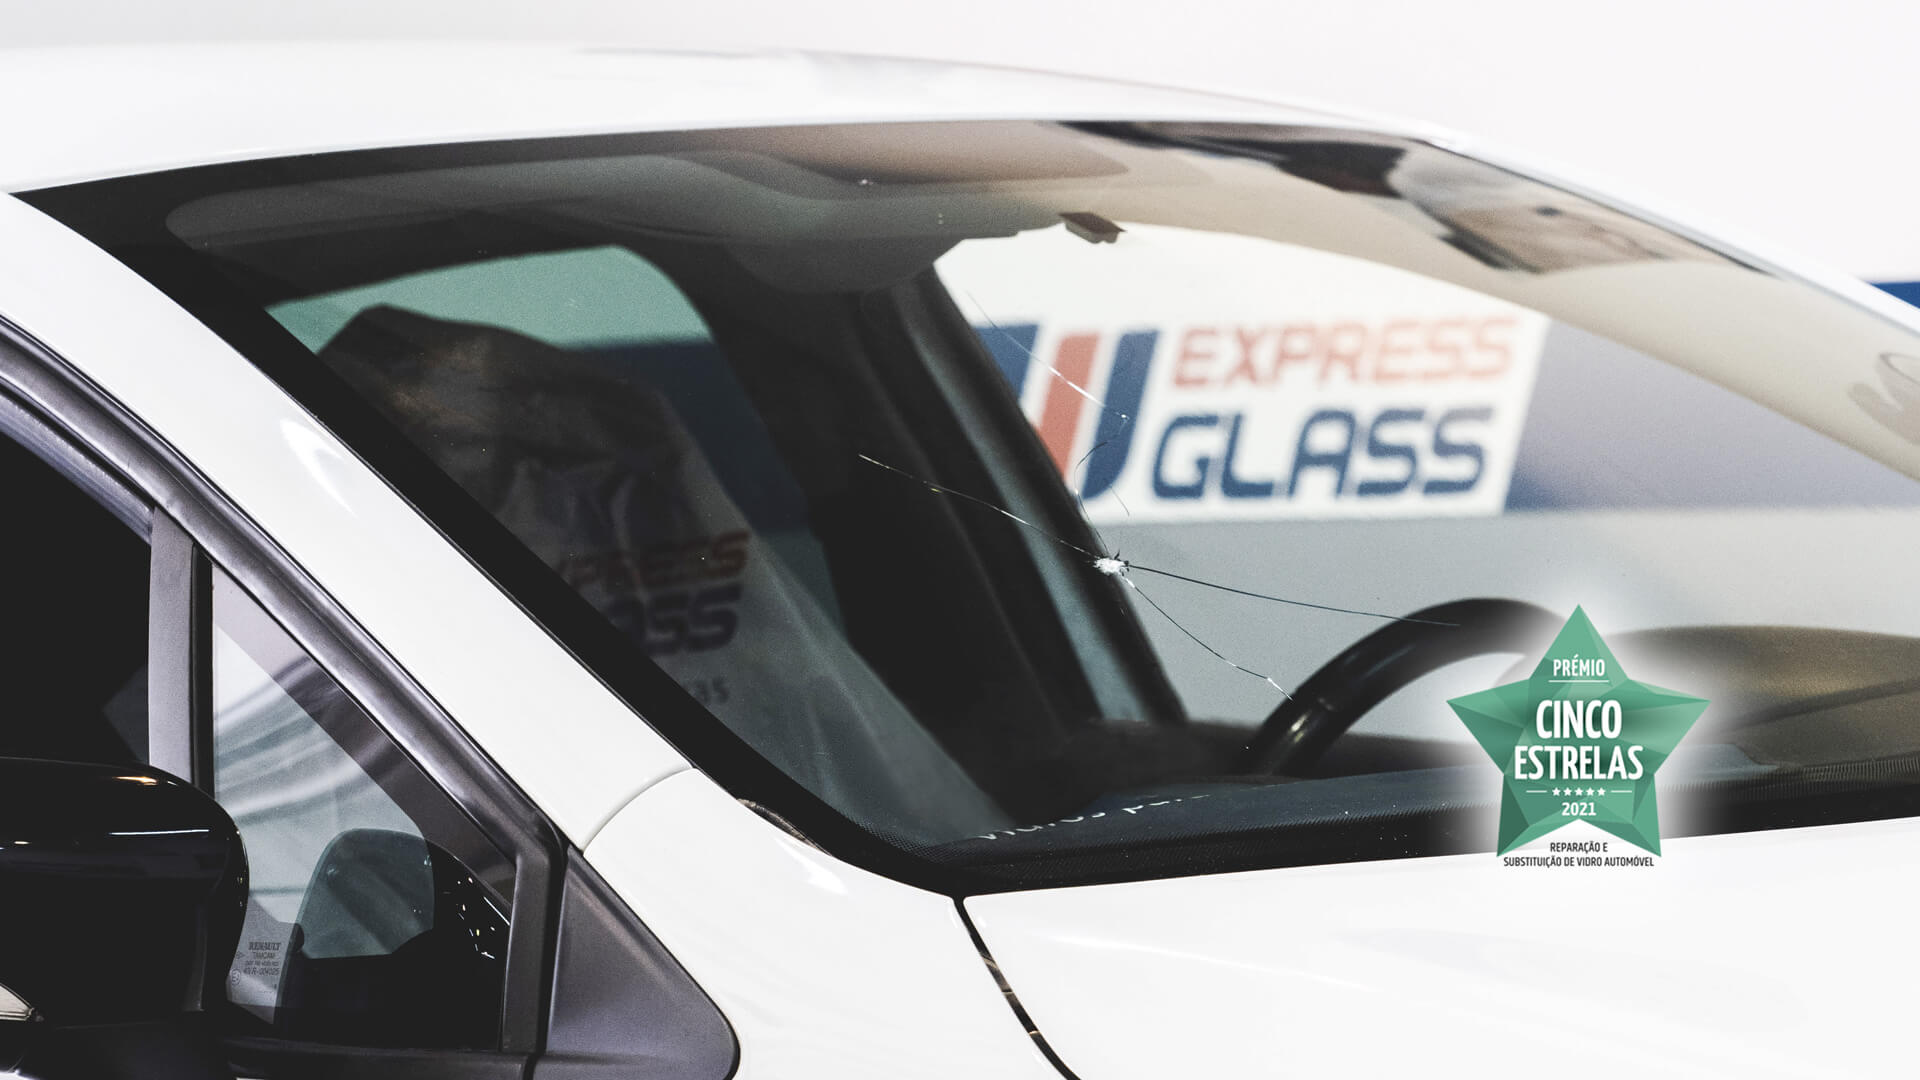 Changer son pare-brise : avant ou après les vacances ? - Glass Express •  Glass Express